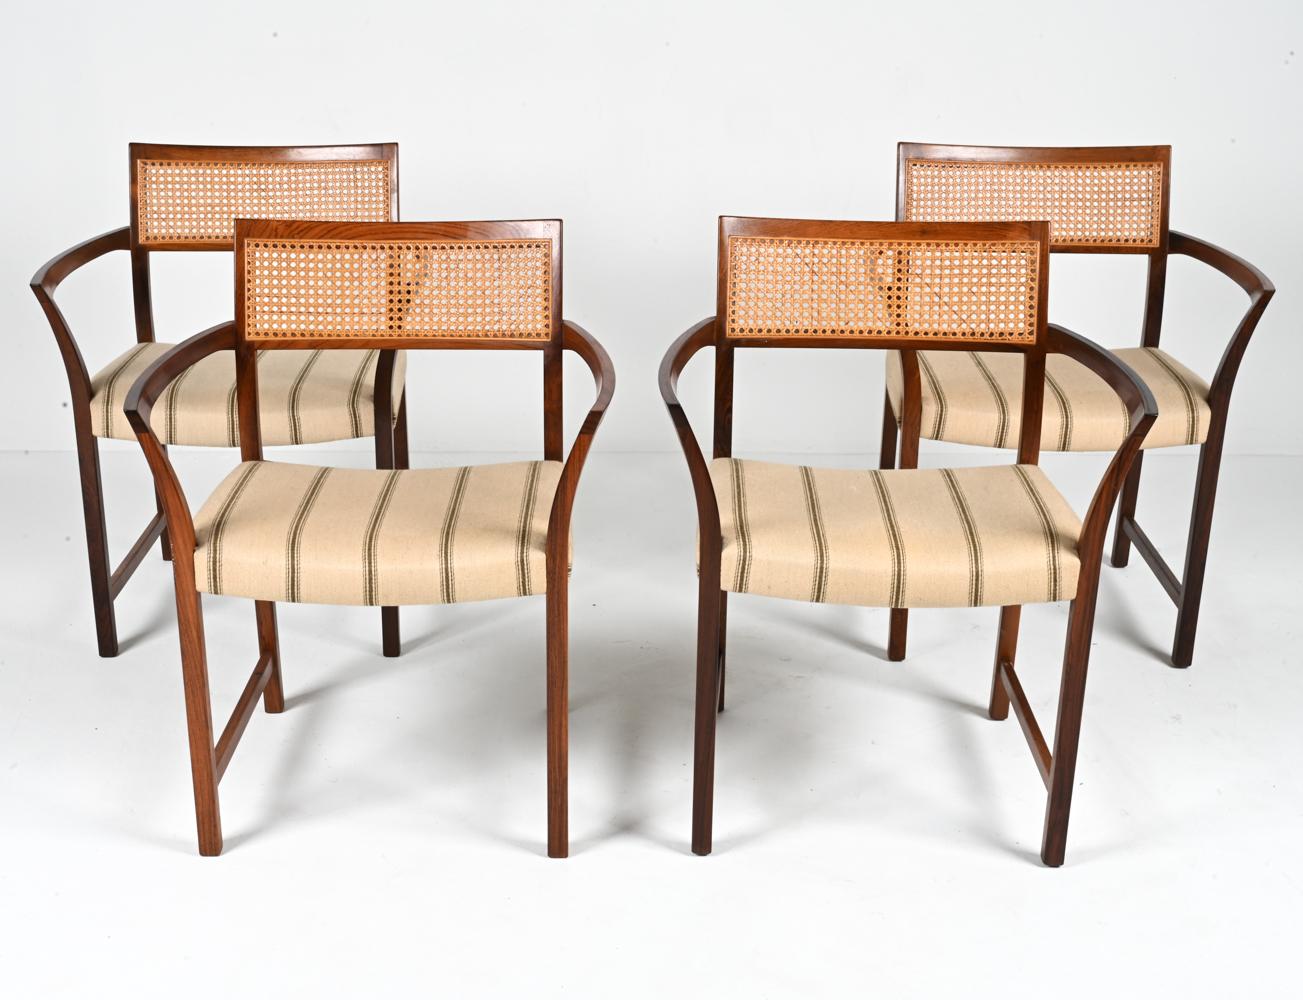 Tauchen Sie ein in die goldene Ära des Designs mit diesem exquisiten Set aus vier dänischen Sesseln von Illum Wikkelsø aus den 1950er Jahren. Diese Stühle strahlen die Raffinesse und Eleganz der modernen Ästhetik der Jahrhundertmitte aus und sind